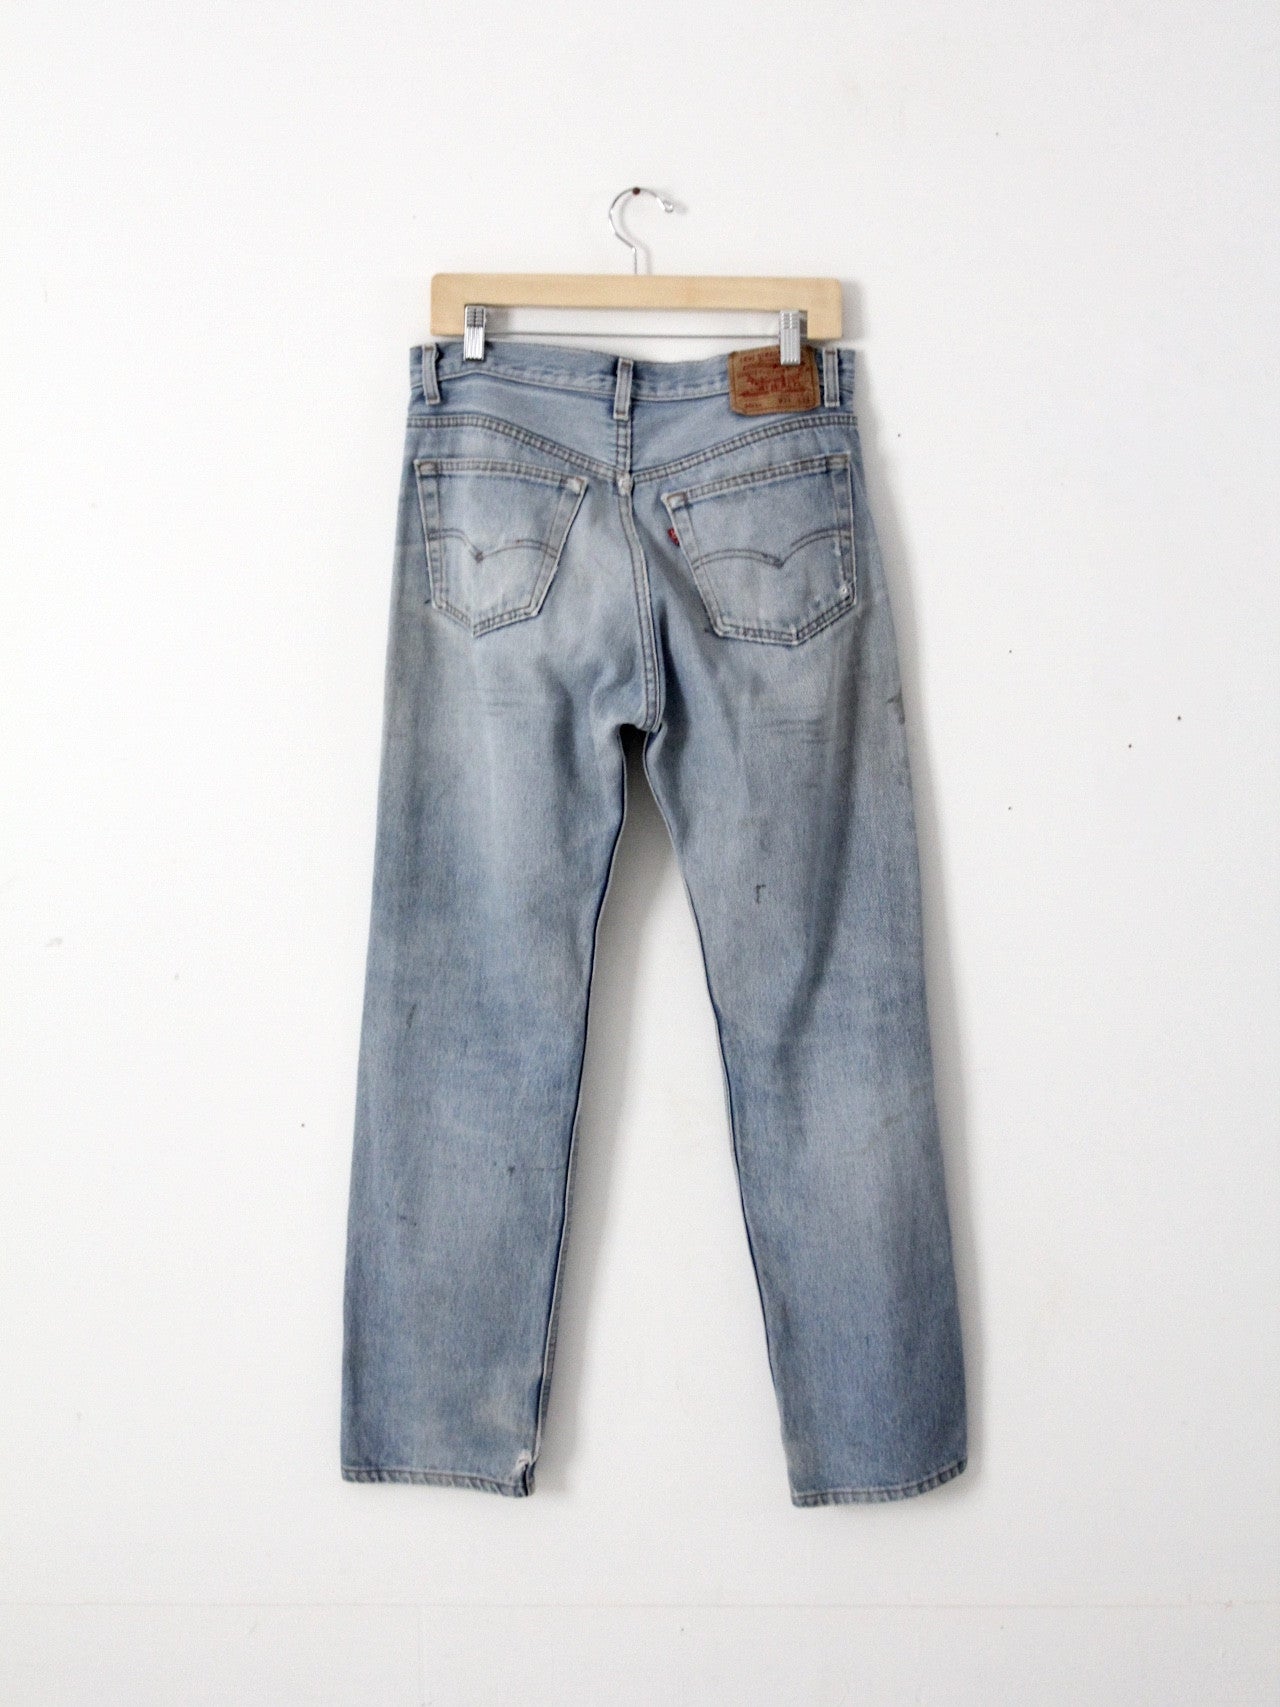 vintage Levis 501xx denim jeans, 33 x 30 – 86 Vintage